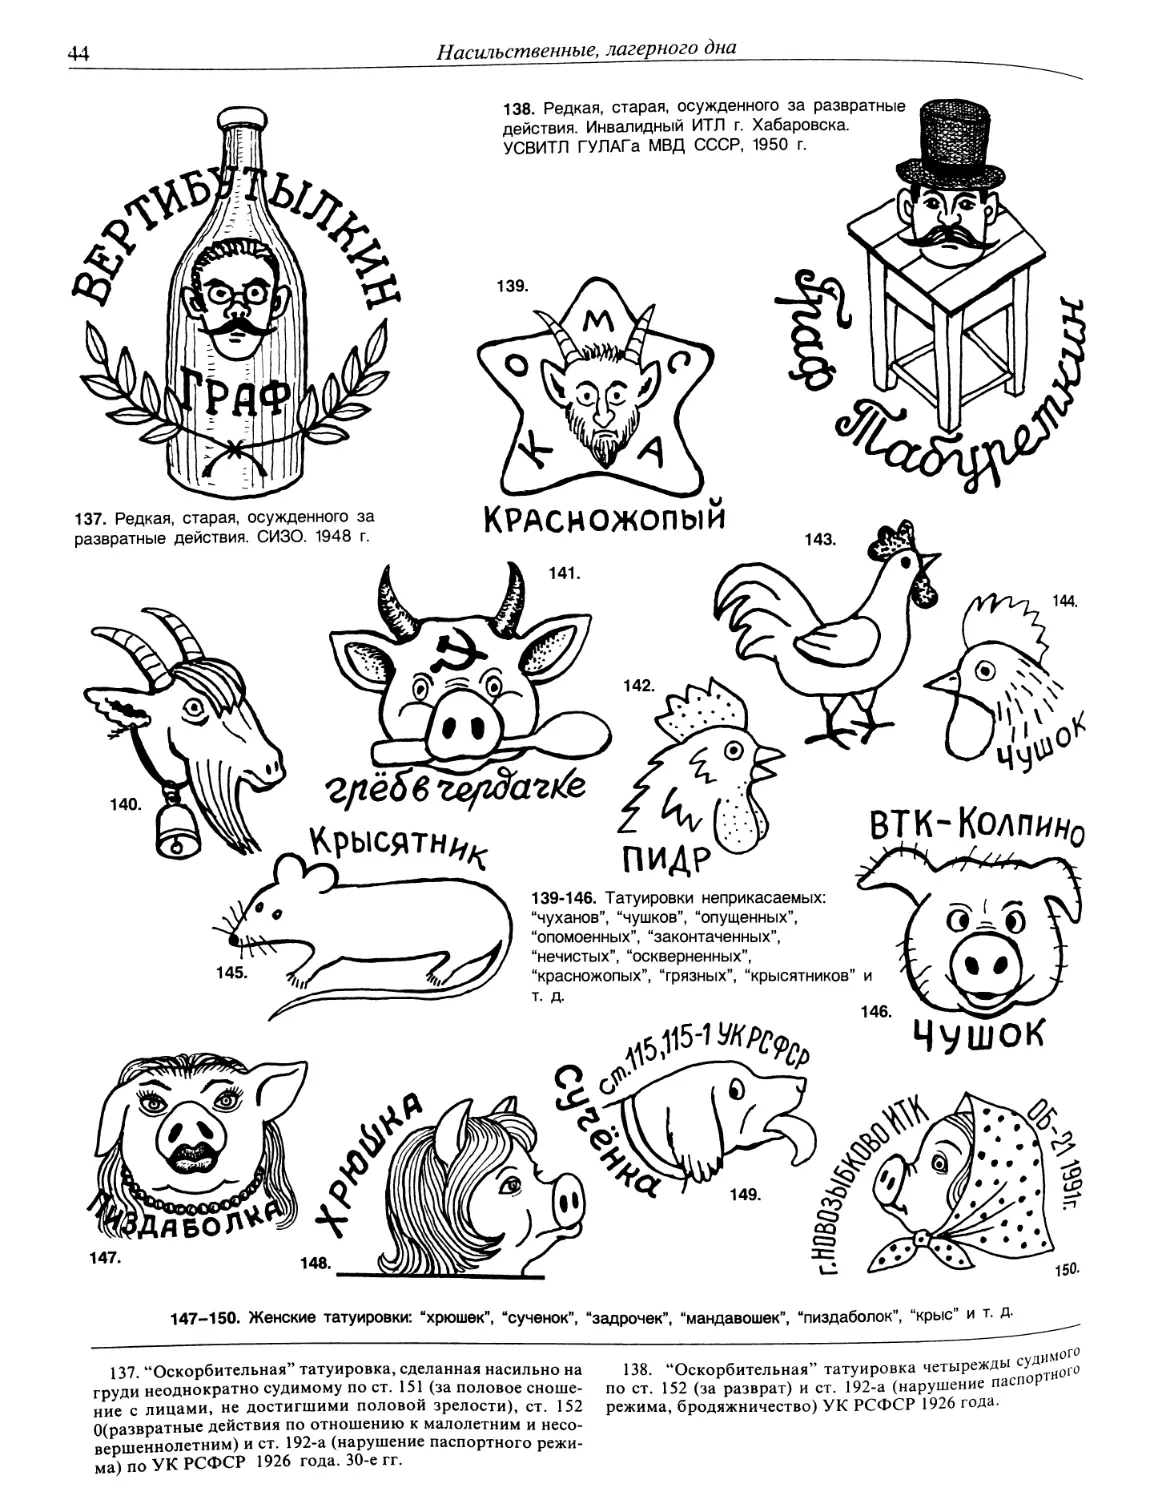 Зоновские Татуировки и их обозначение